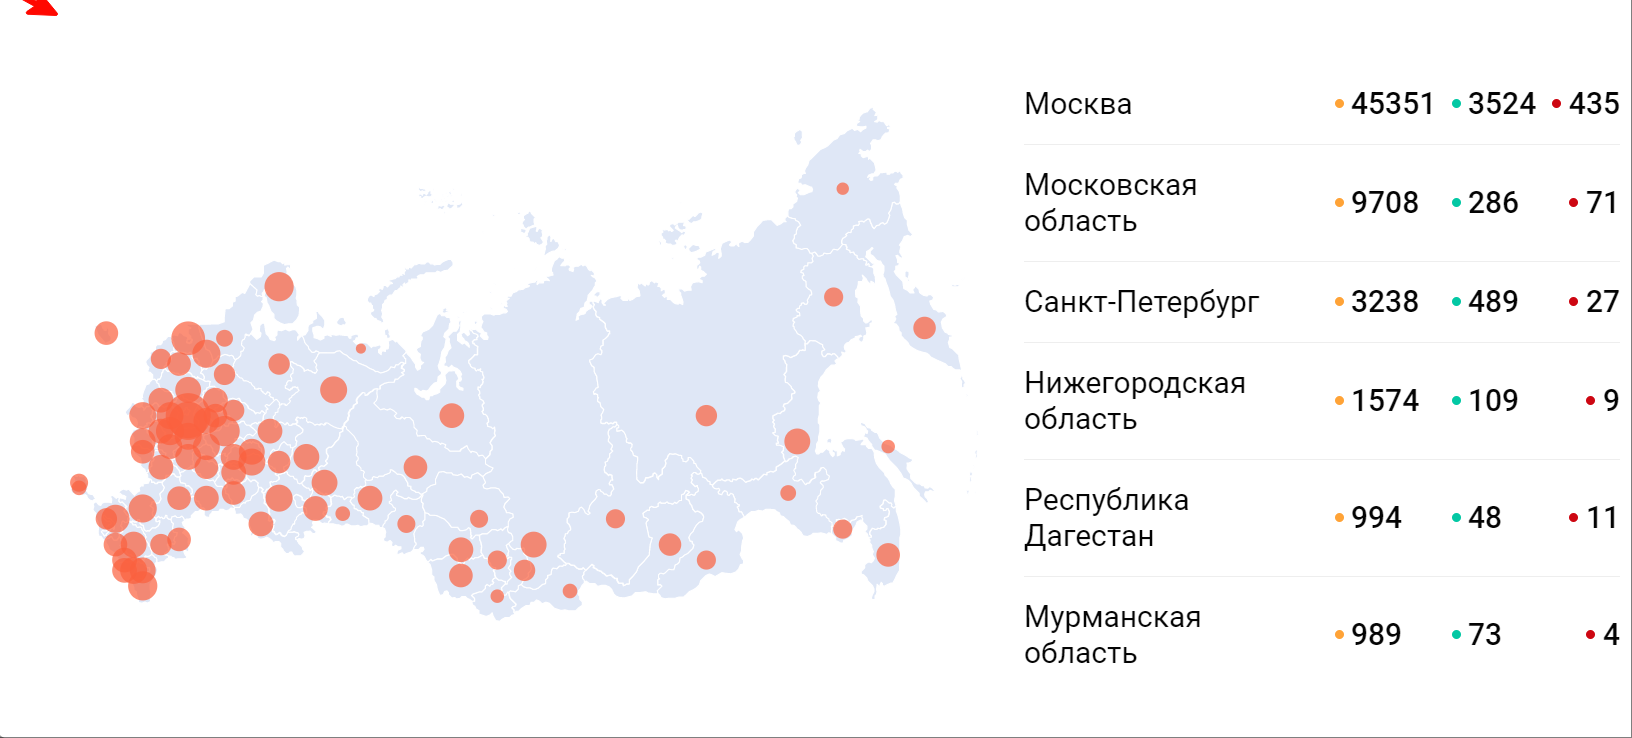 Коронавирус в россии заболевшие последние